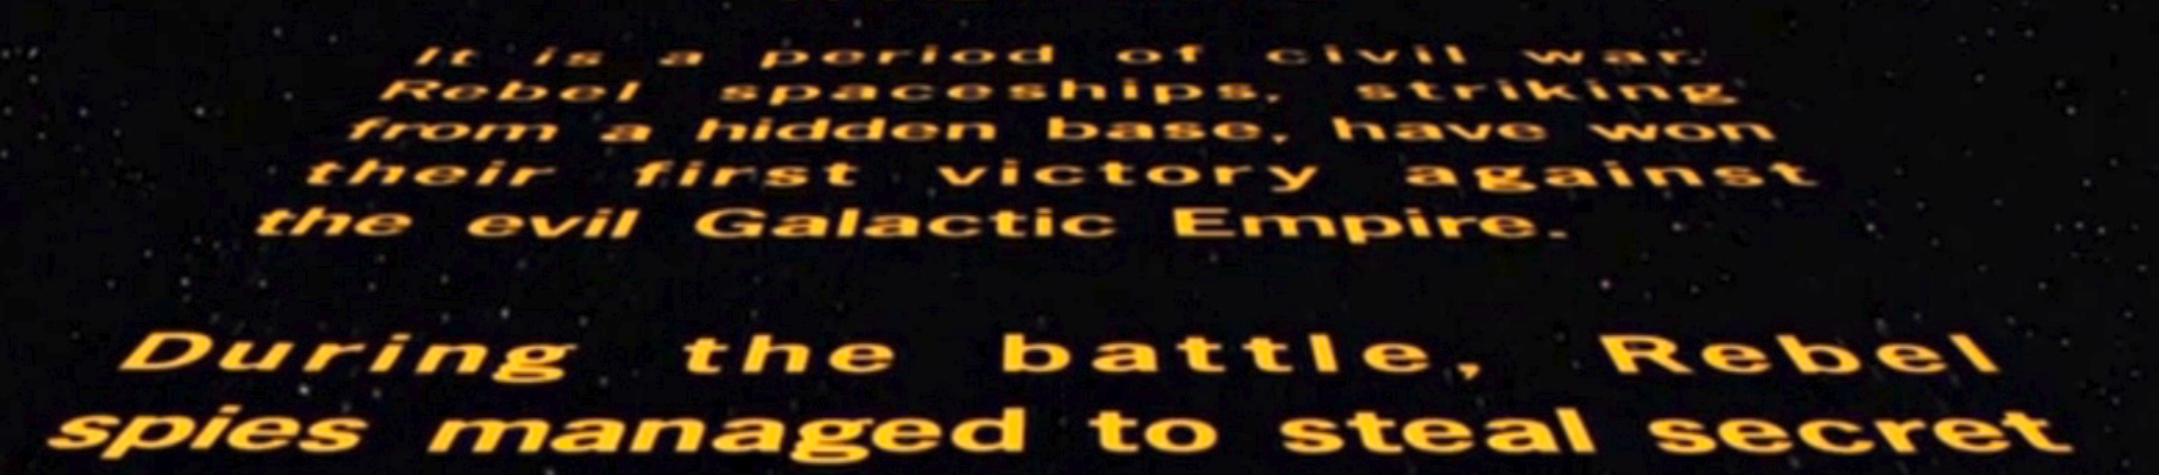 Star Wars Episode IV : The Pentesters Strike Back